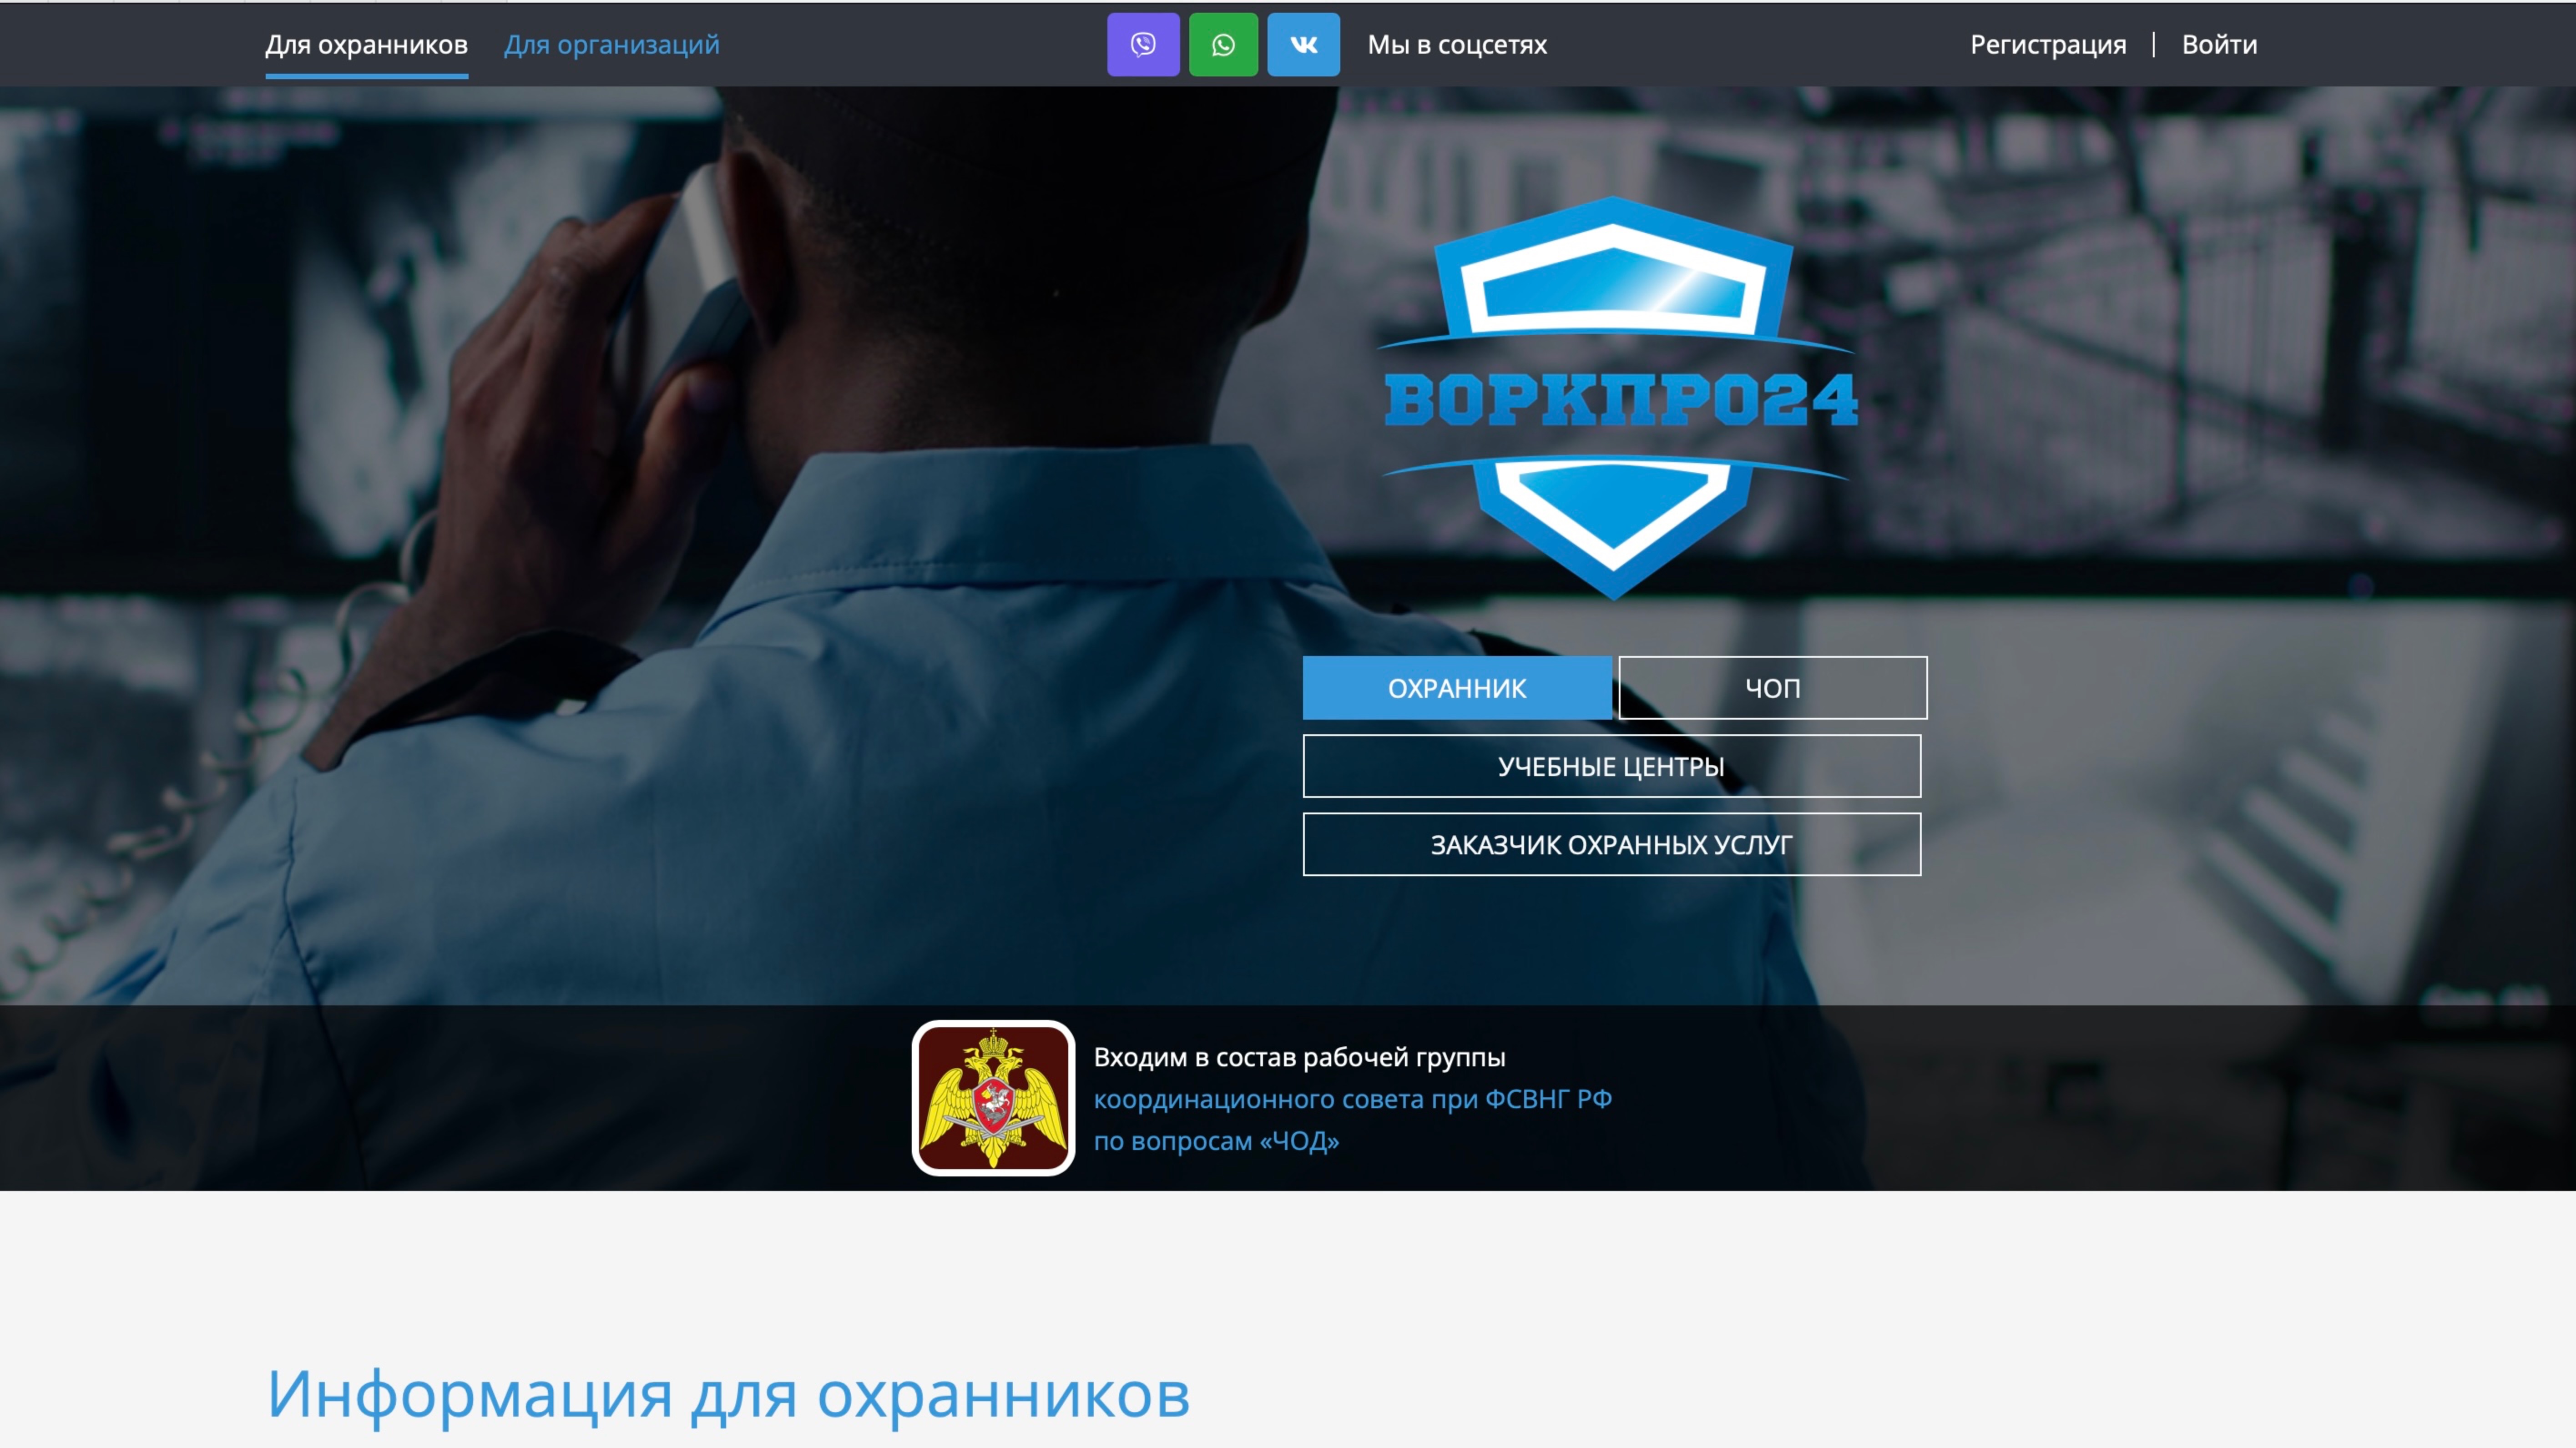 Работа в охране. Портал вакансий в охранной отрасли - Воркпро24